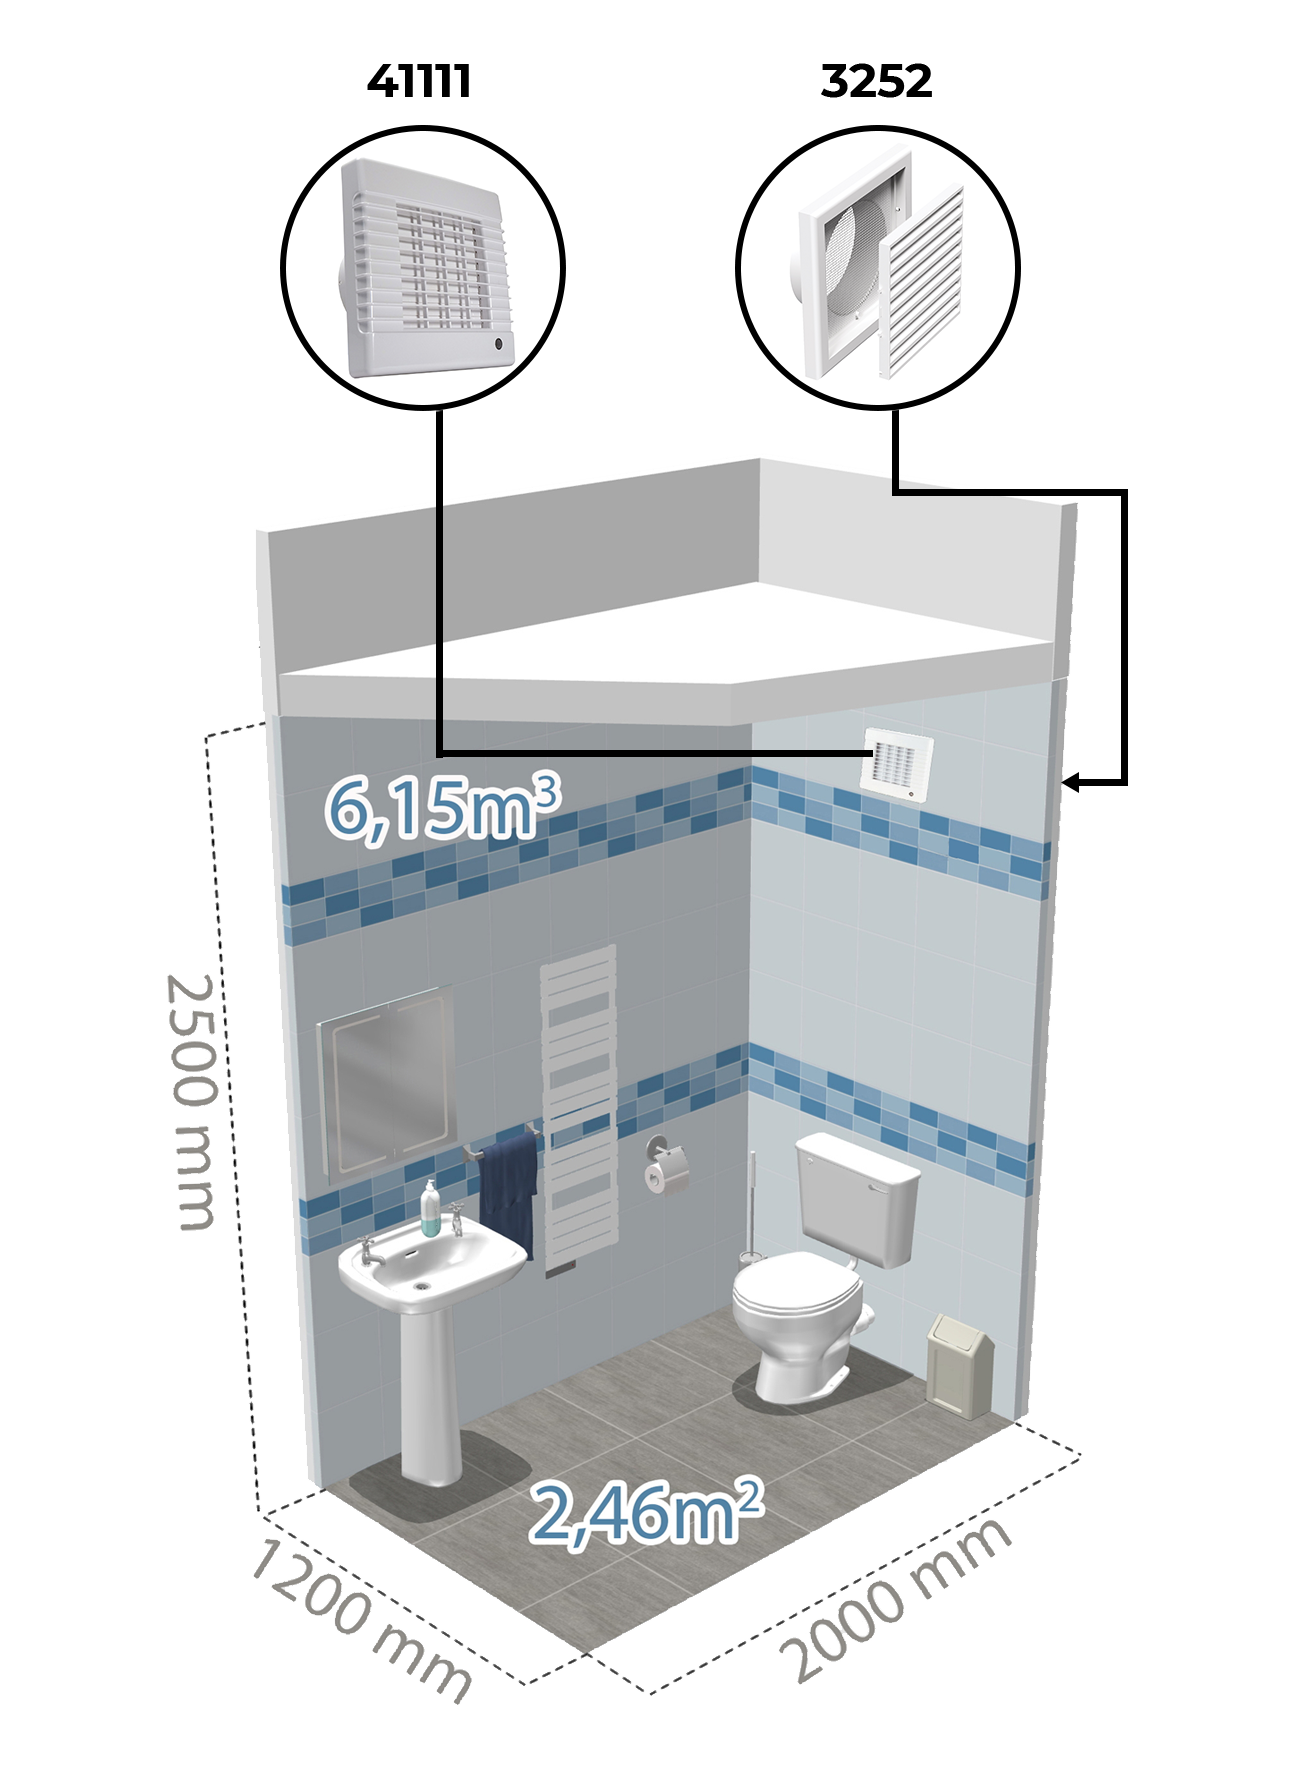 Príklad inštalácie vzduchotechniky na záchode pomocou kúpeľňového ventilátora Dalap LV